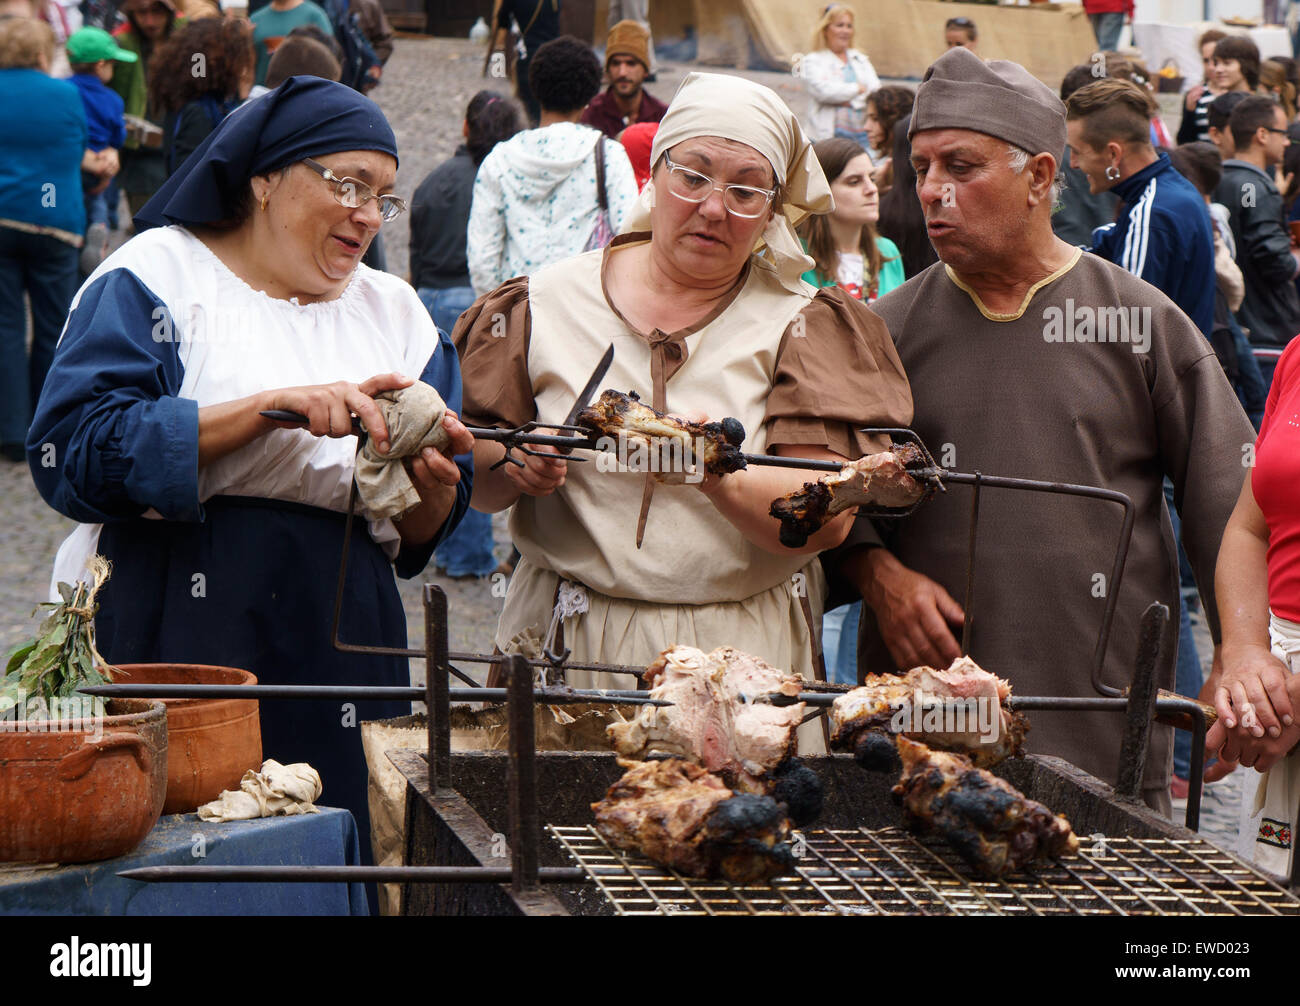 Menschen gekleidet in mittelalterliche Kleidung Braten Fleisch während  einer Renaissance Messe in Coimbra, Portugal, Europa Stockfotografie - Alamy